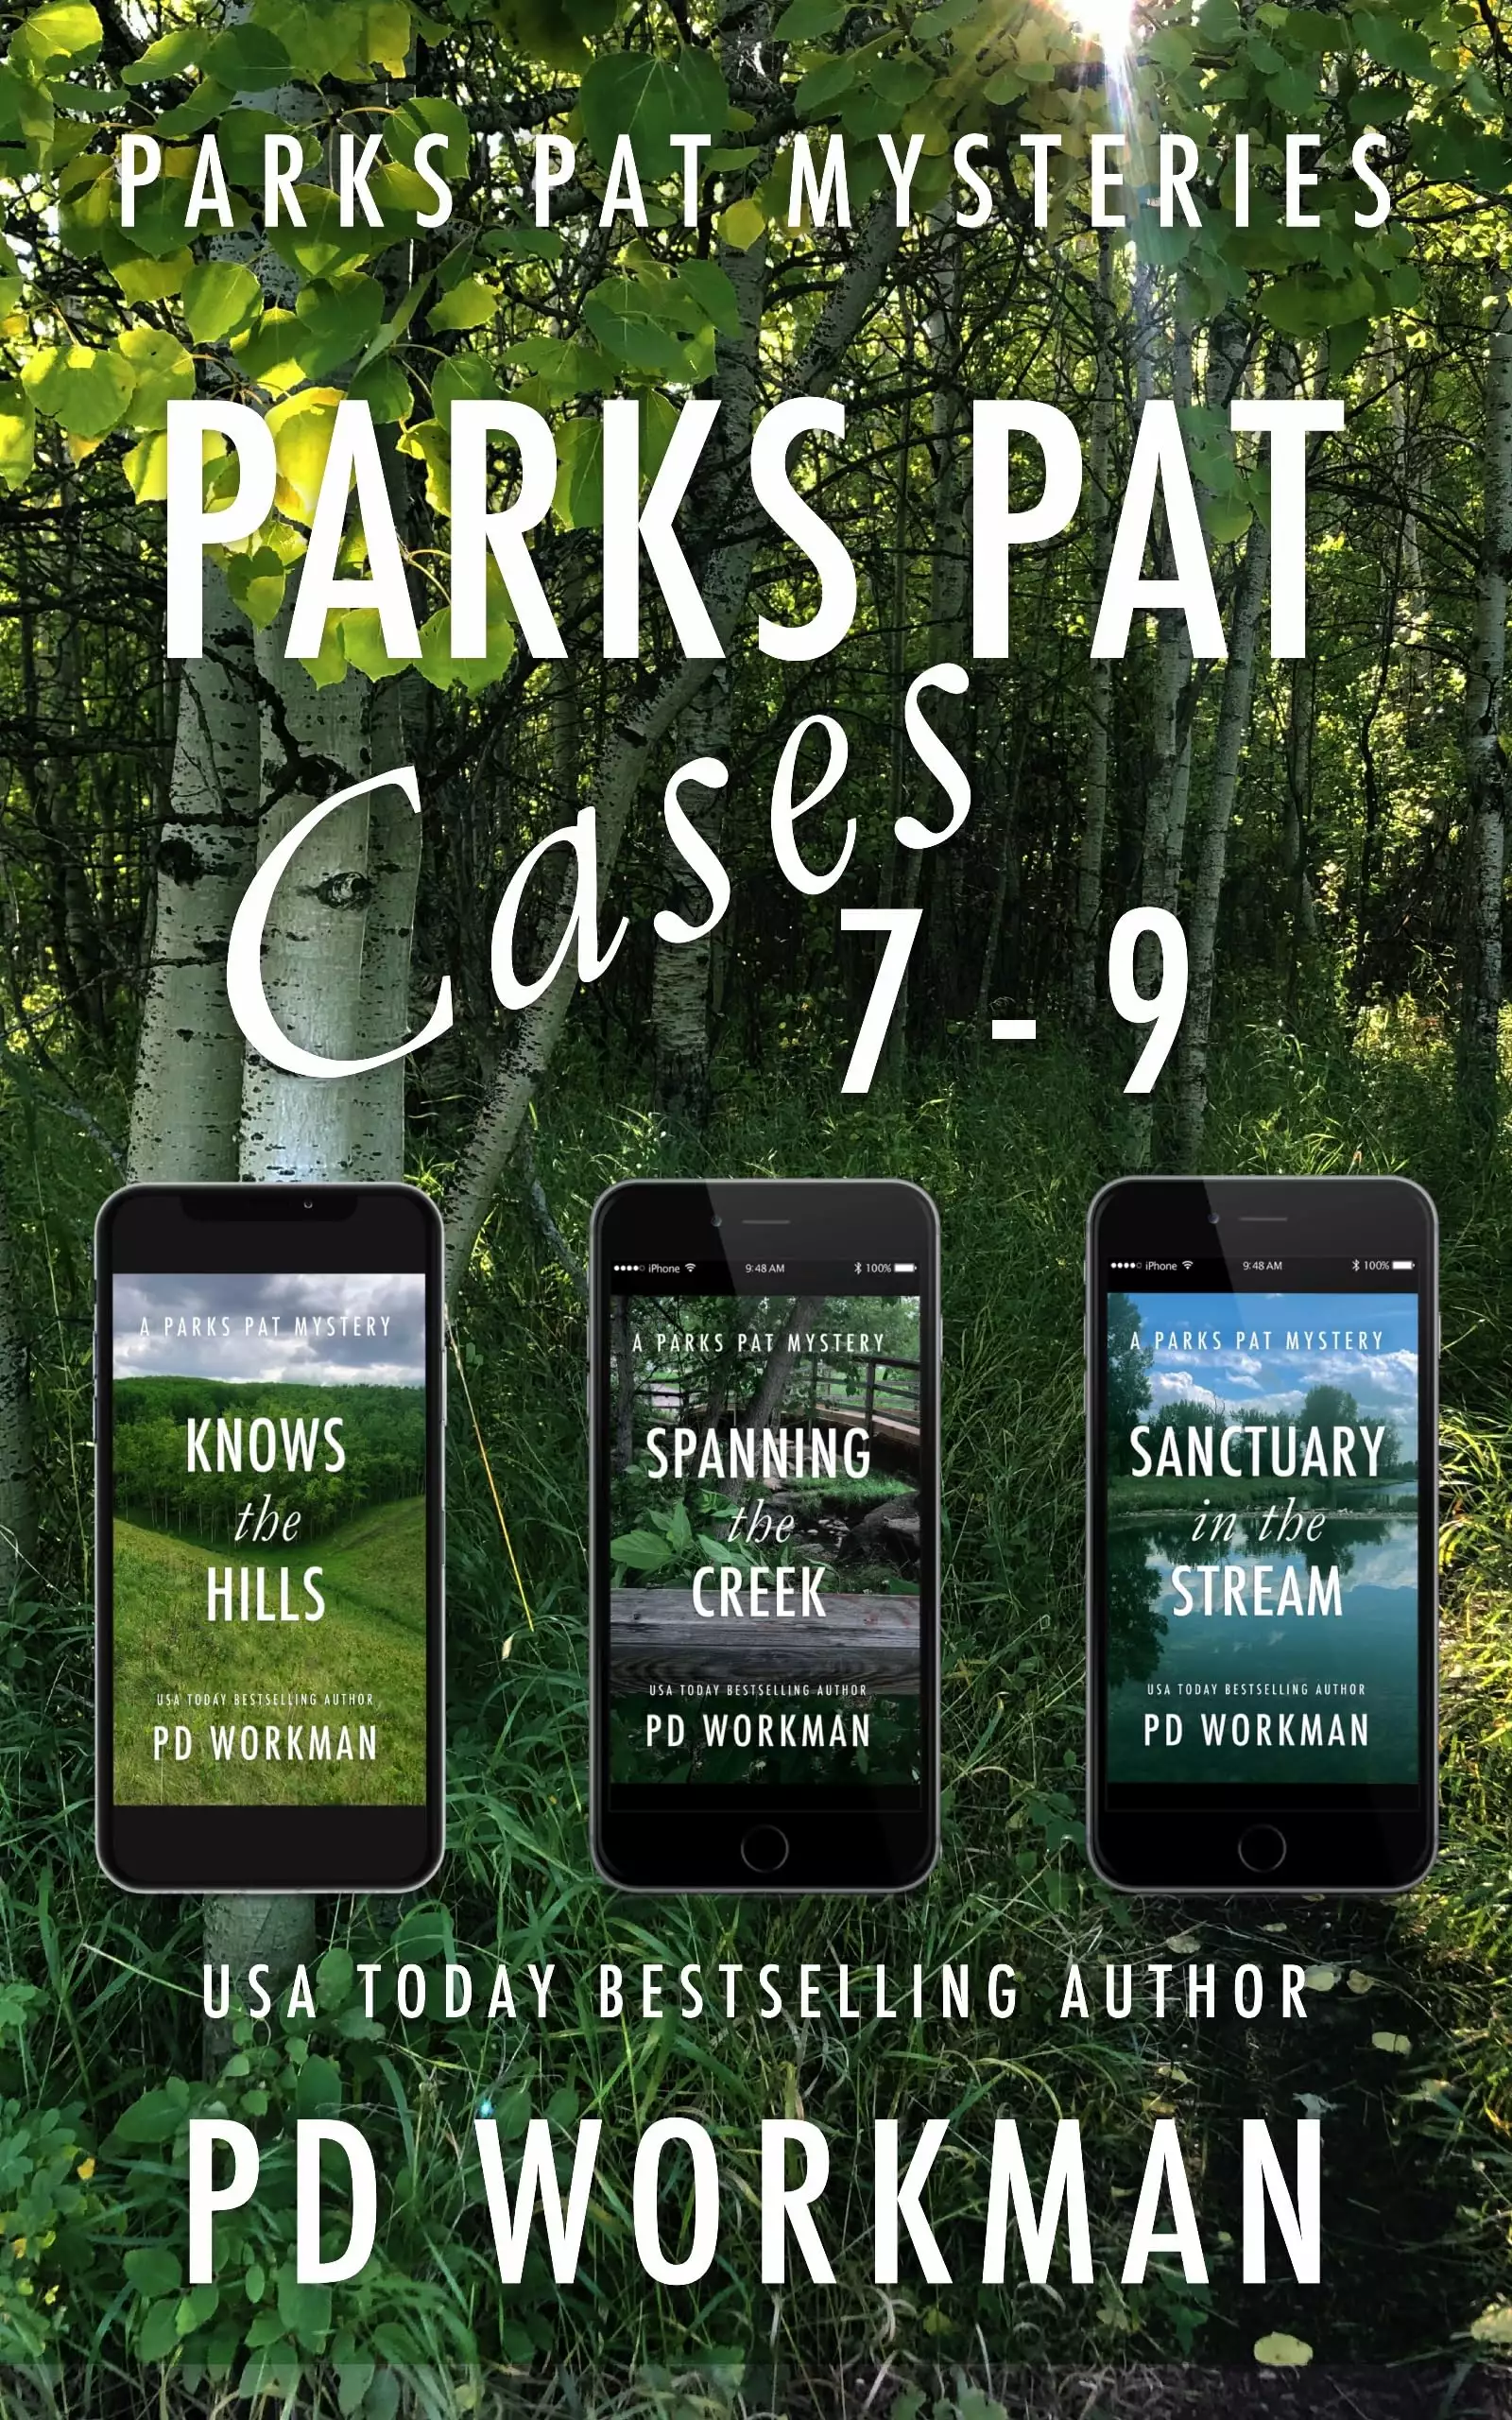 Parks Pat Cases 7-9